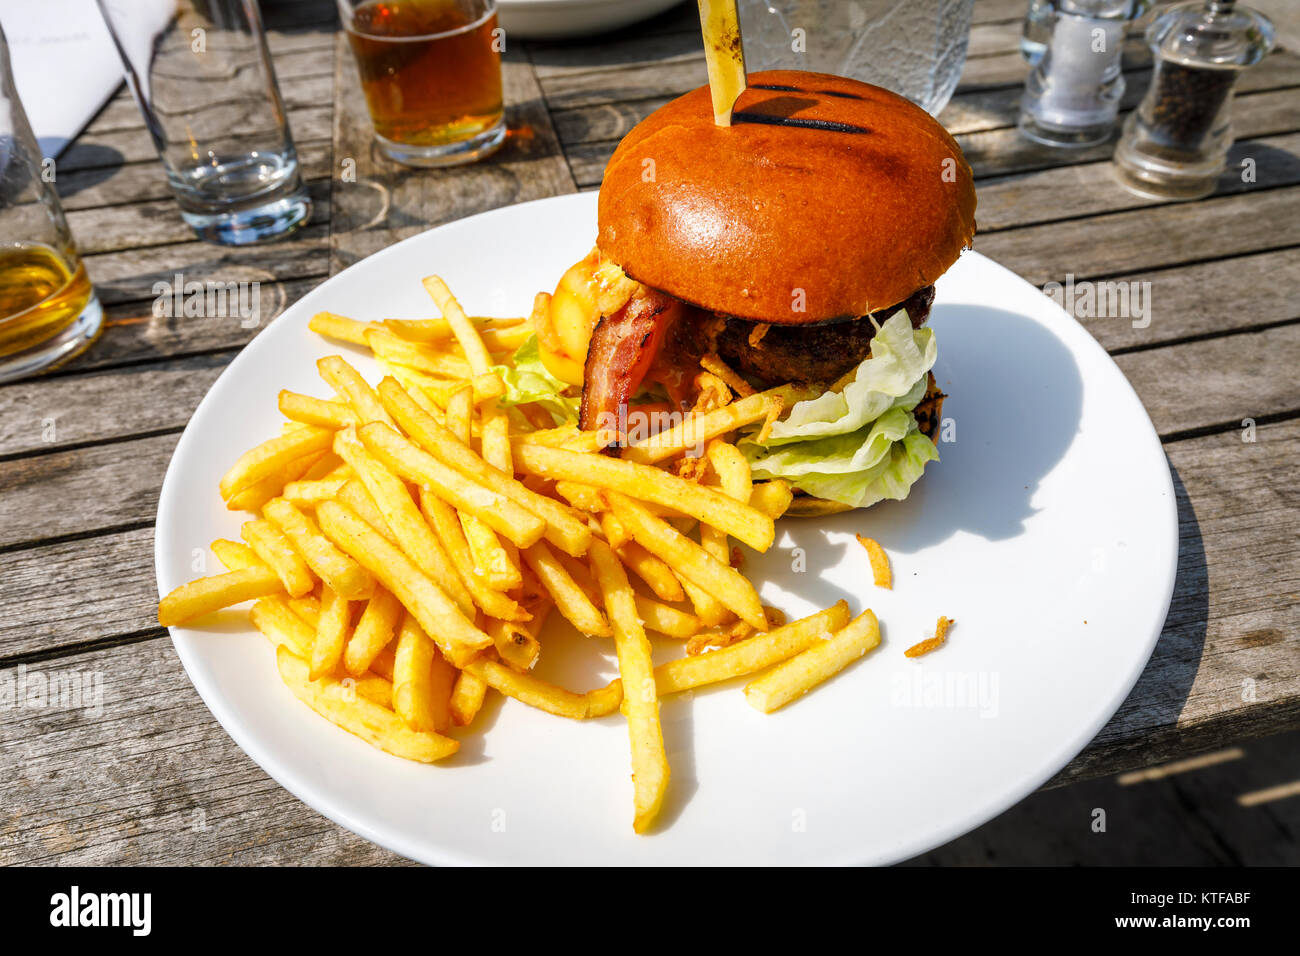 Obesità: tipico pub britannico cibo: un beefburger in un panino con il formaggio e la pancetta e una pila di golden patatine fritte, hamburger e patatine su una piastra bianca Foto Stock